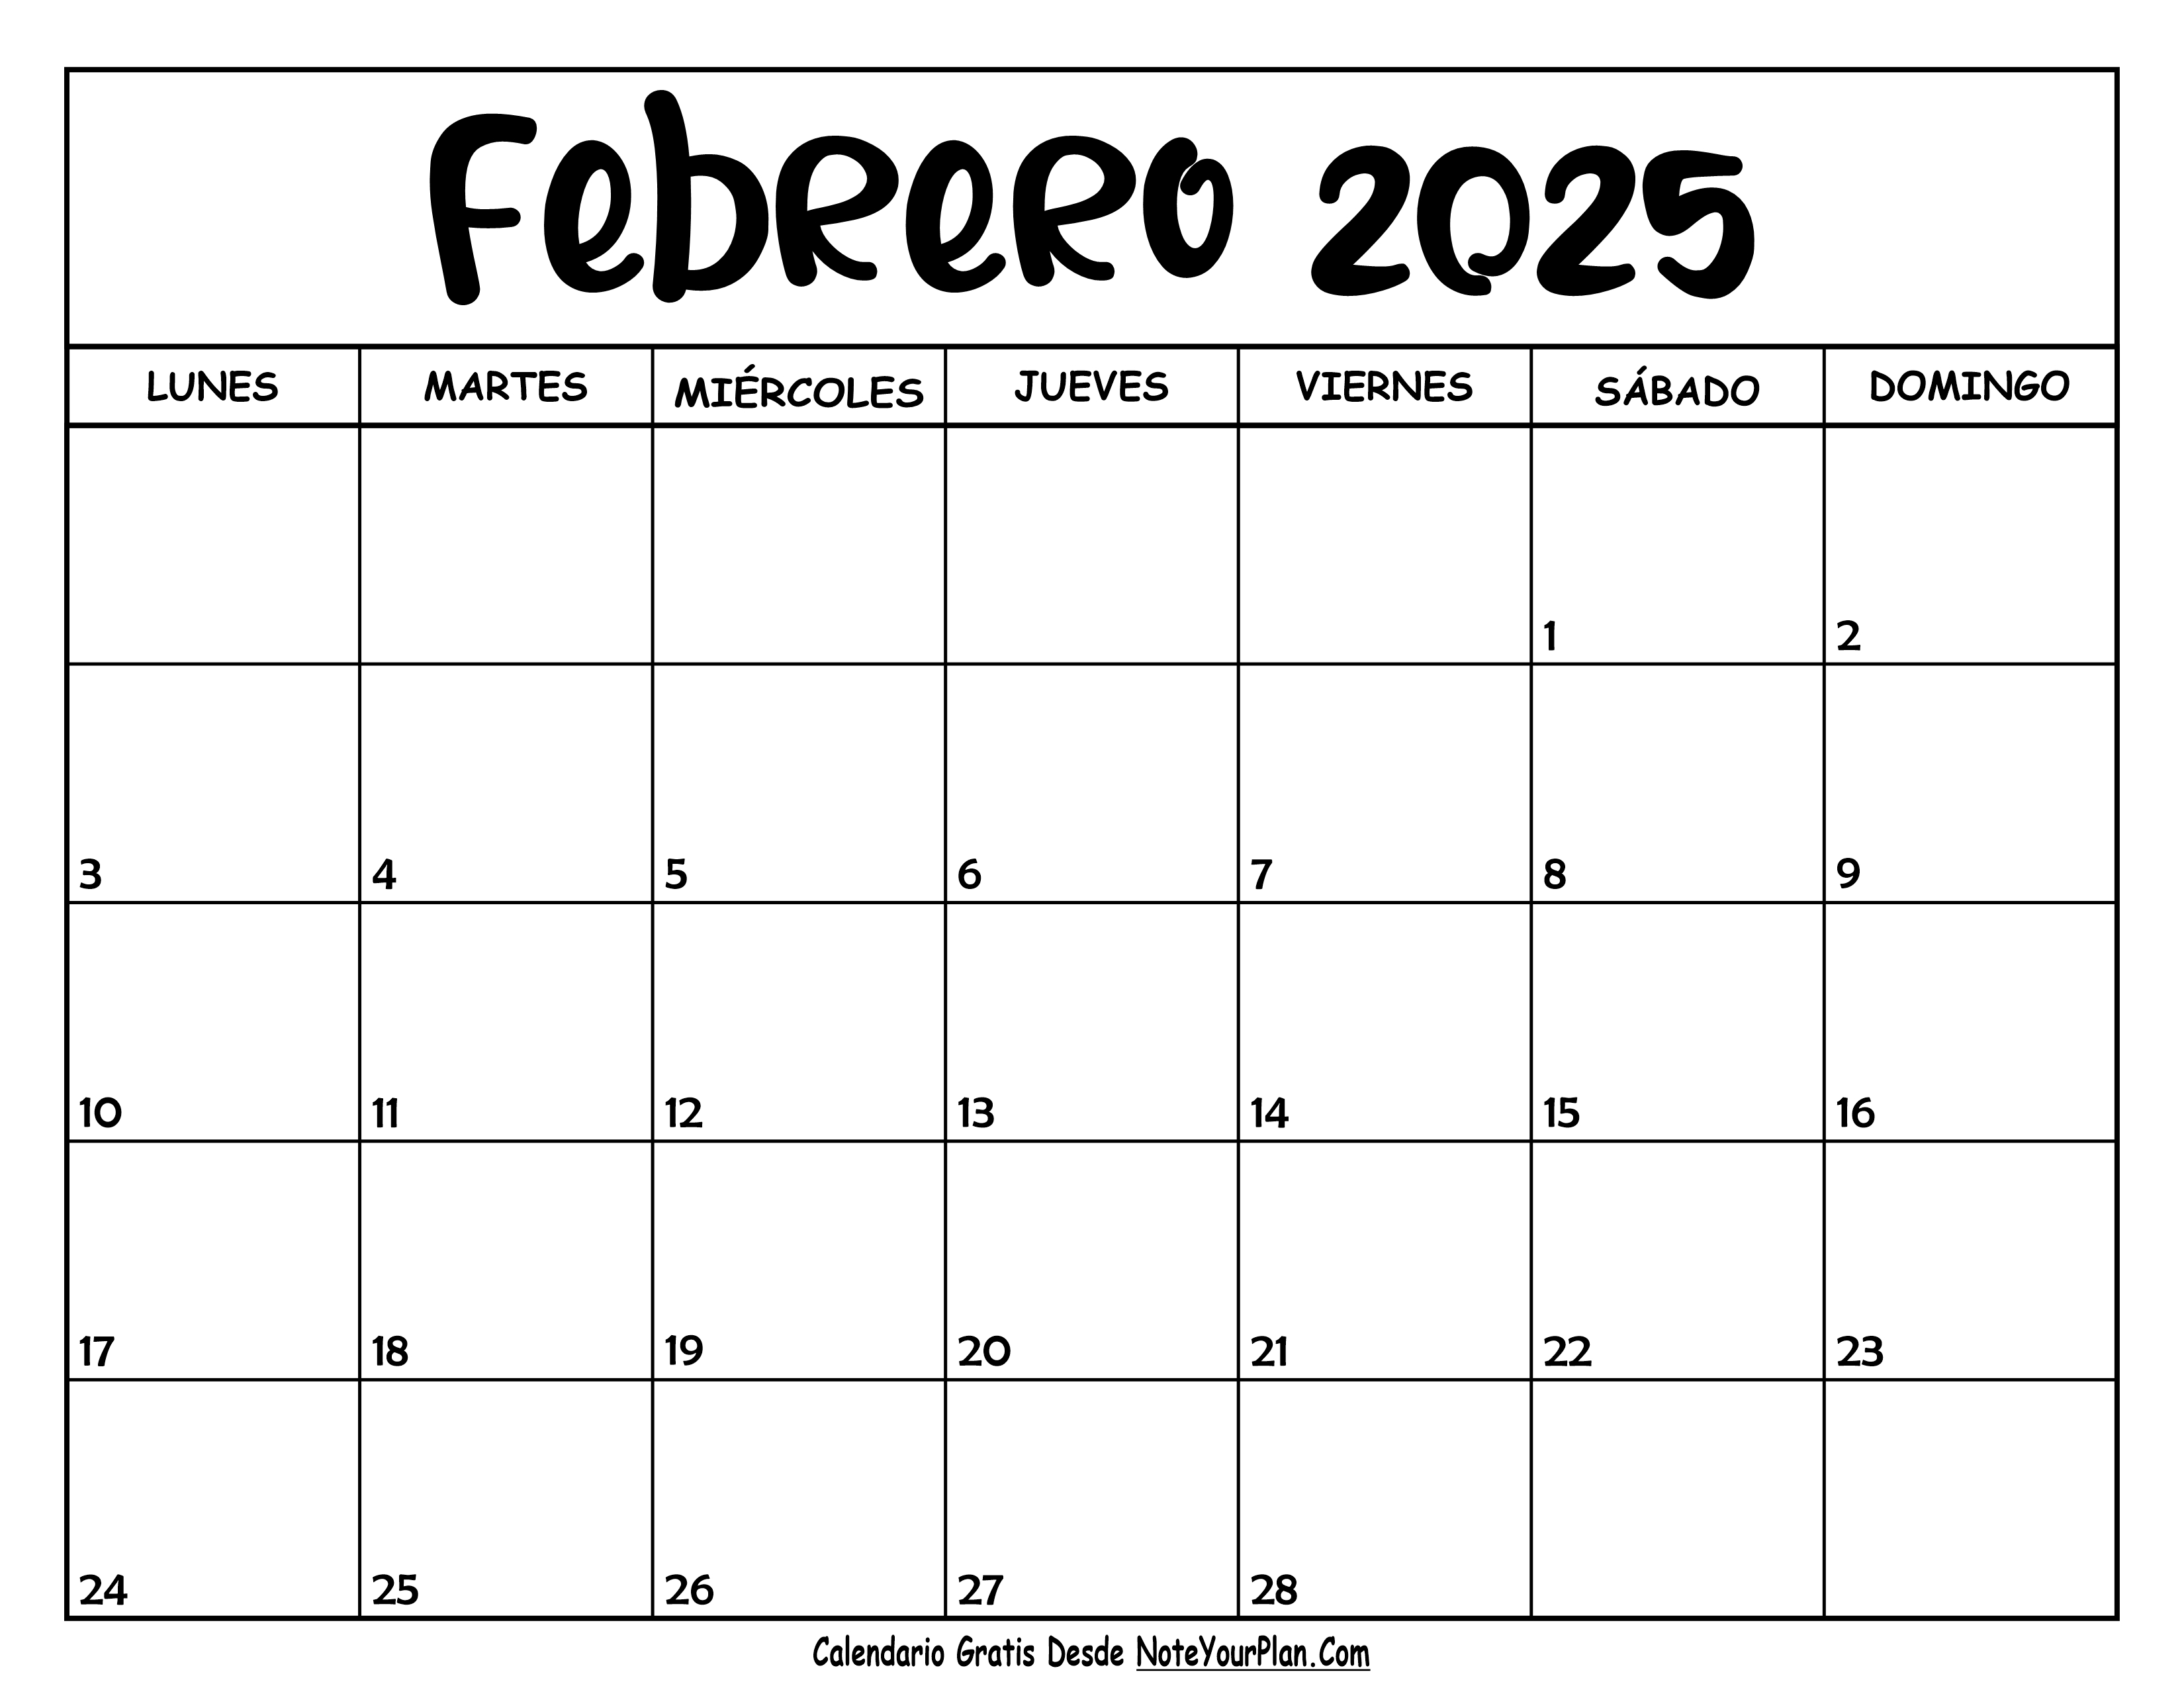 Calendario de Febrero 2025